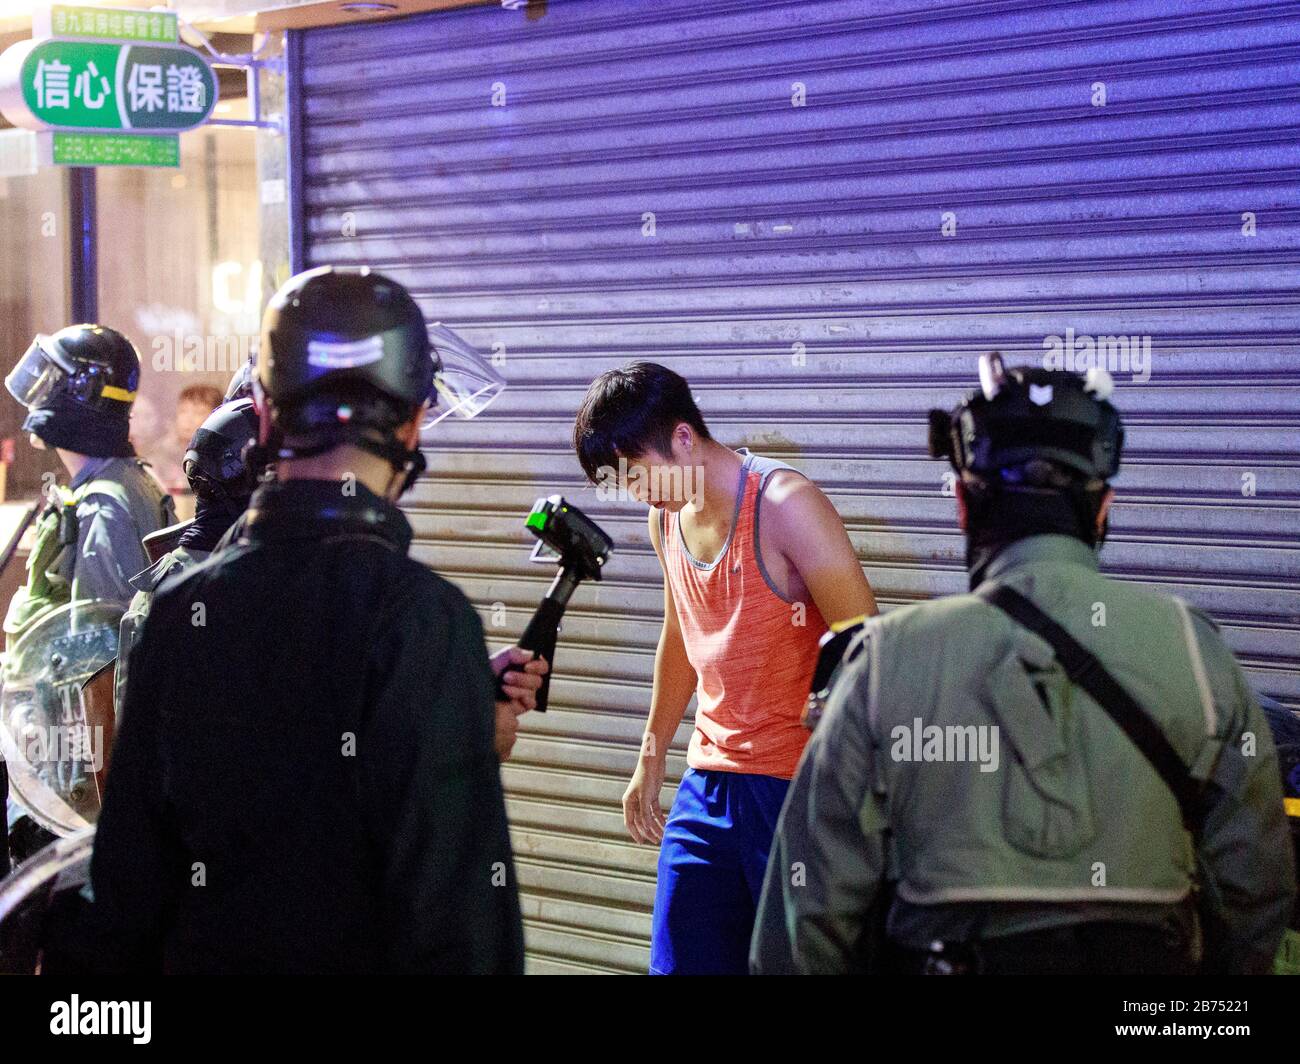 La police a arrêté des manifestants à North point. Les manifestants se rallient à la loi anti-masque de Hong Kong. Banque D'Images